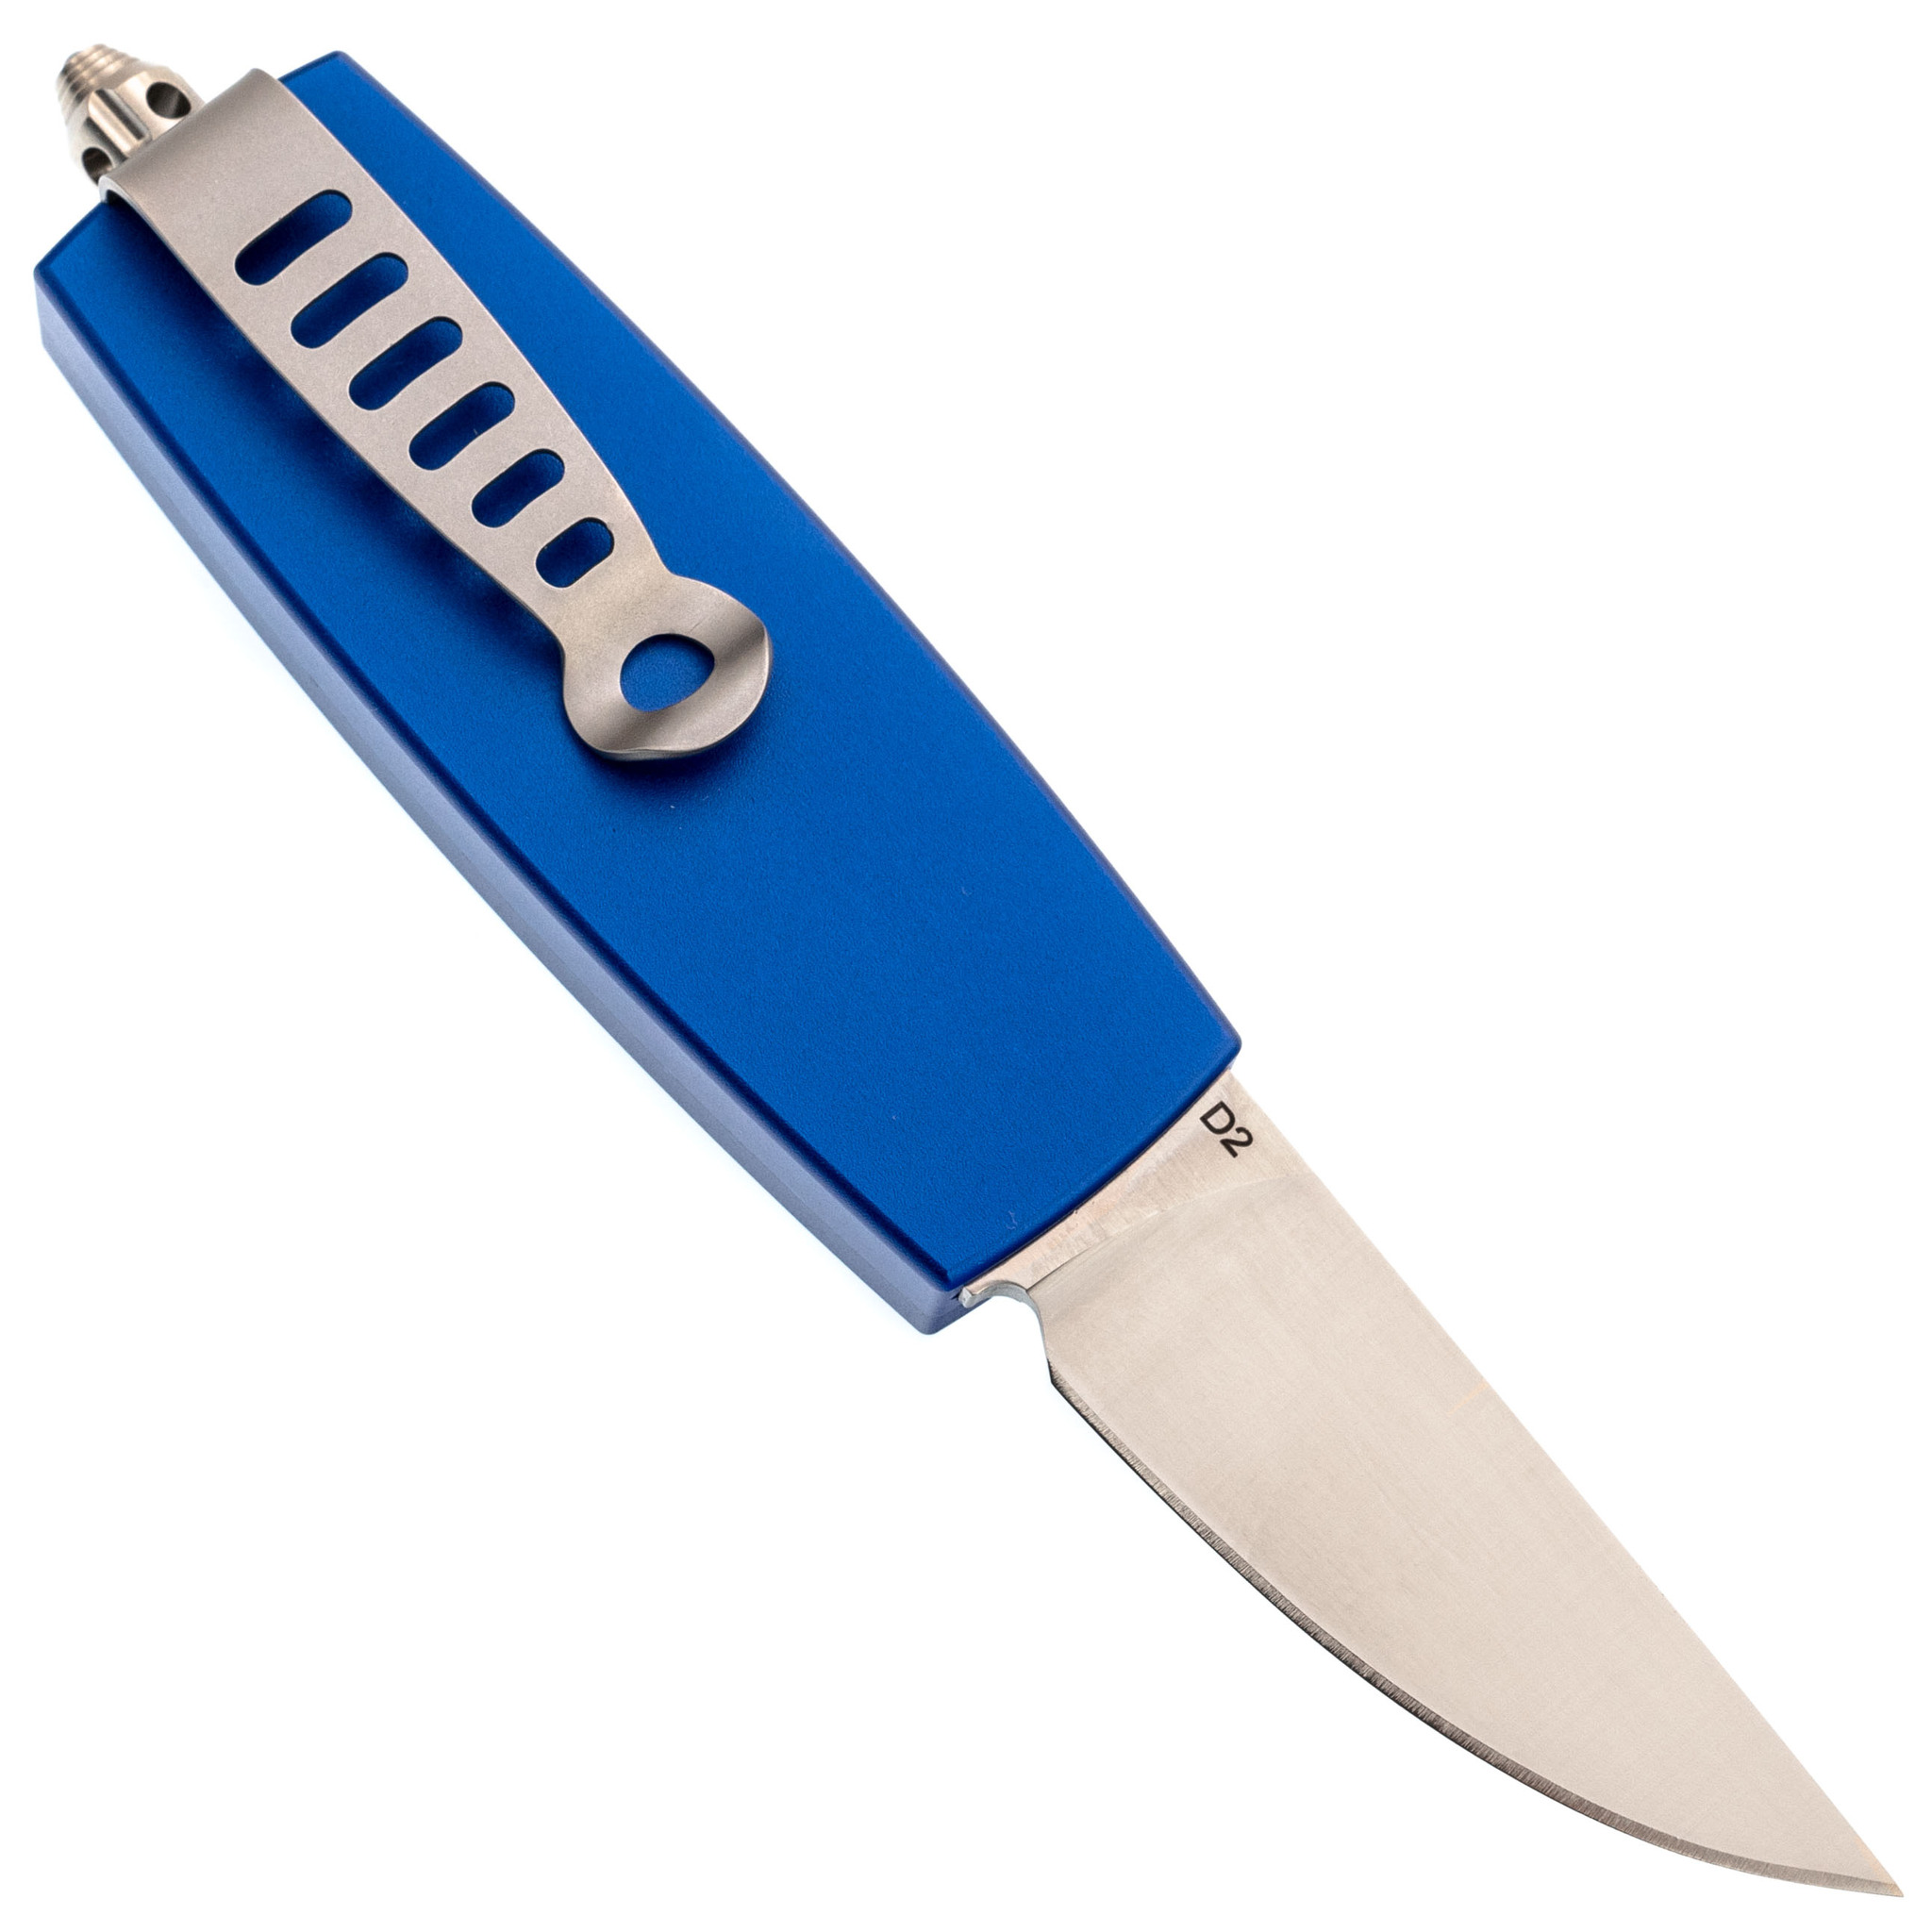 Автоматический нож Steelclaw Криптон-01, сталь D2, рукоять алюминий, синий - фото 3